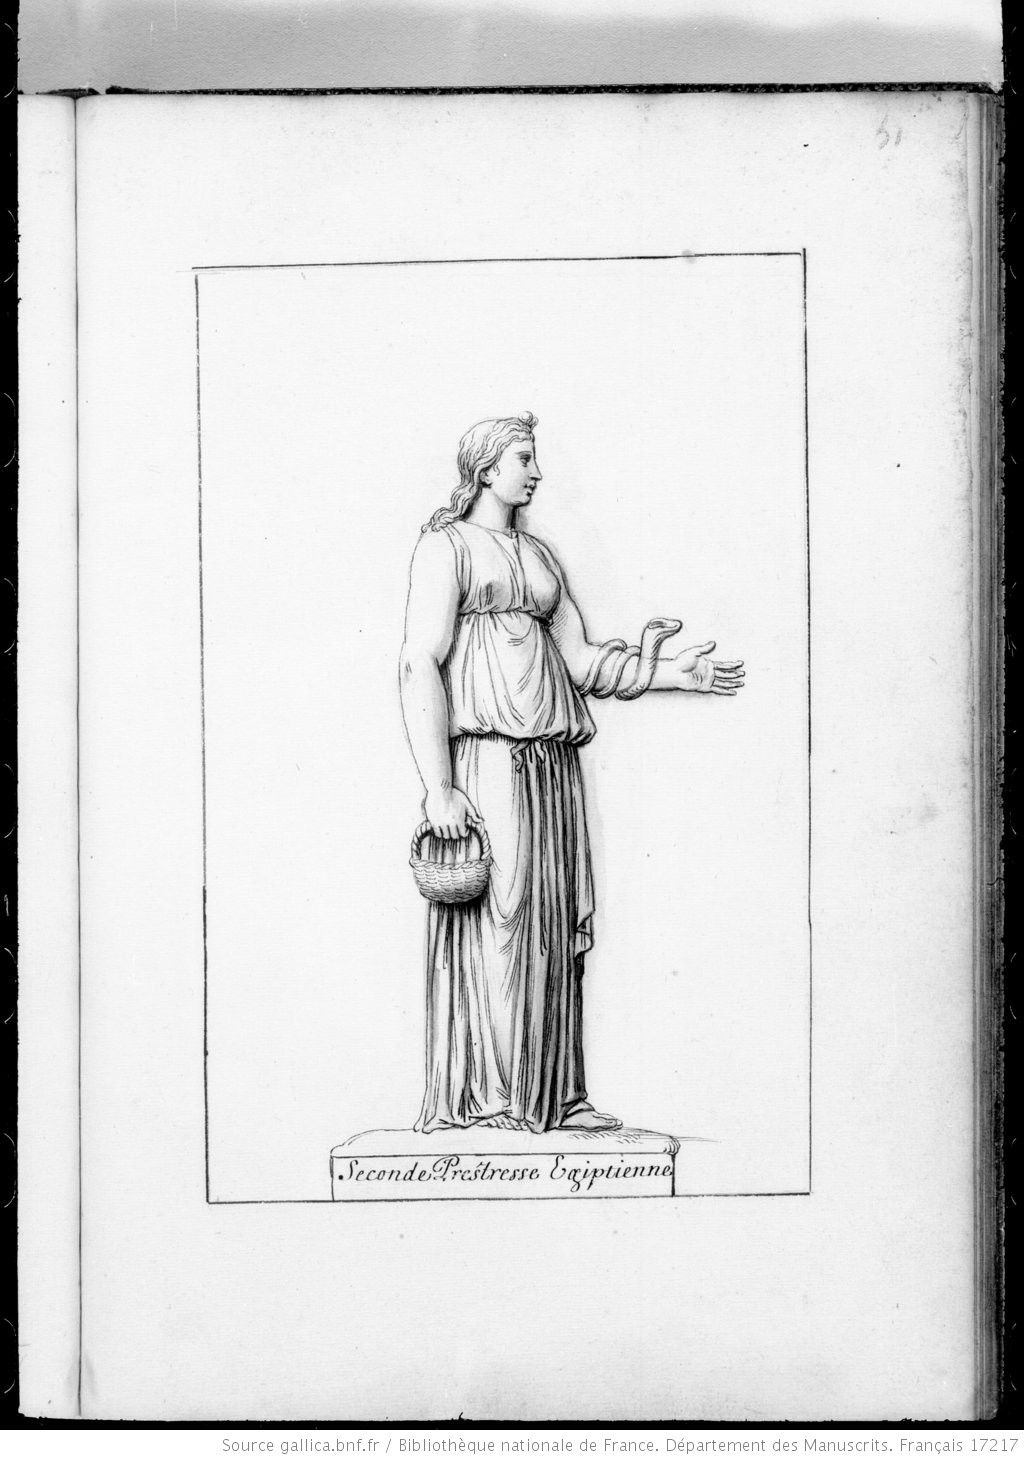 Radierung mit Darstellung einer jungen Frau im antiken Gewandvon der Seite. In ihrer rechten Hand trägt sie einen Korb. Der linke Arm ist angewinkelt und wird von einer Schlange umschlungen. 